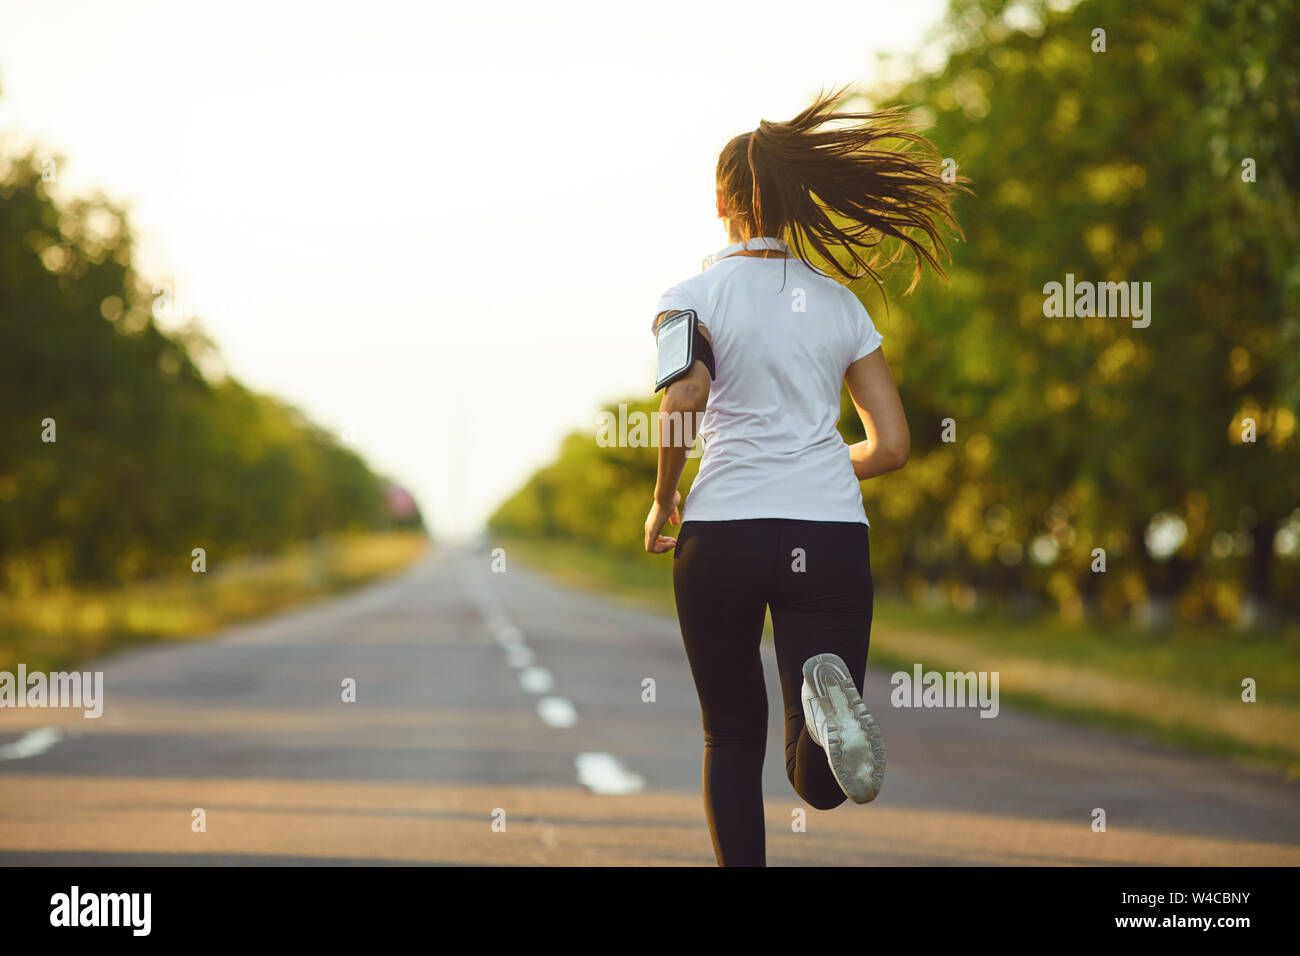 Une coureuse active running jogging le road Banque D'Images